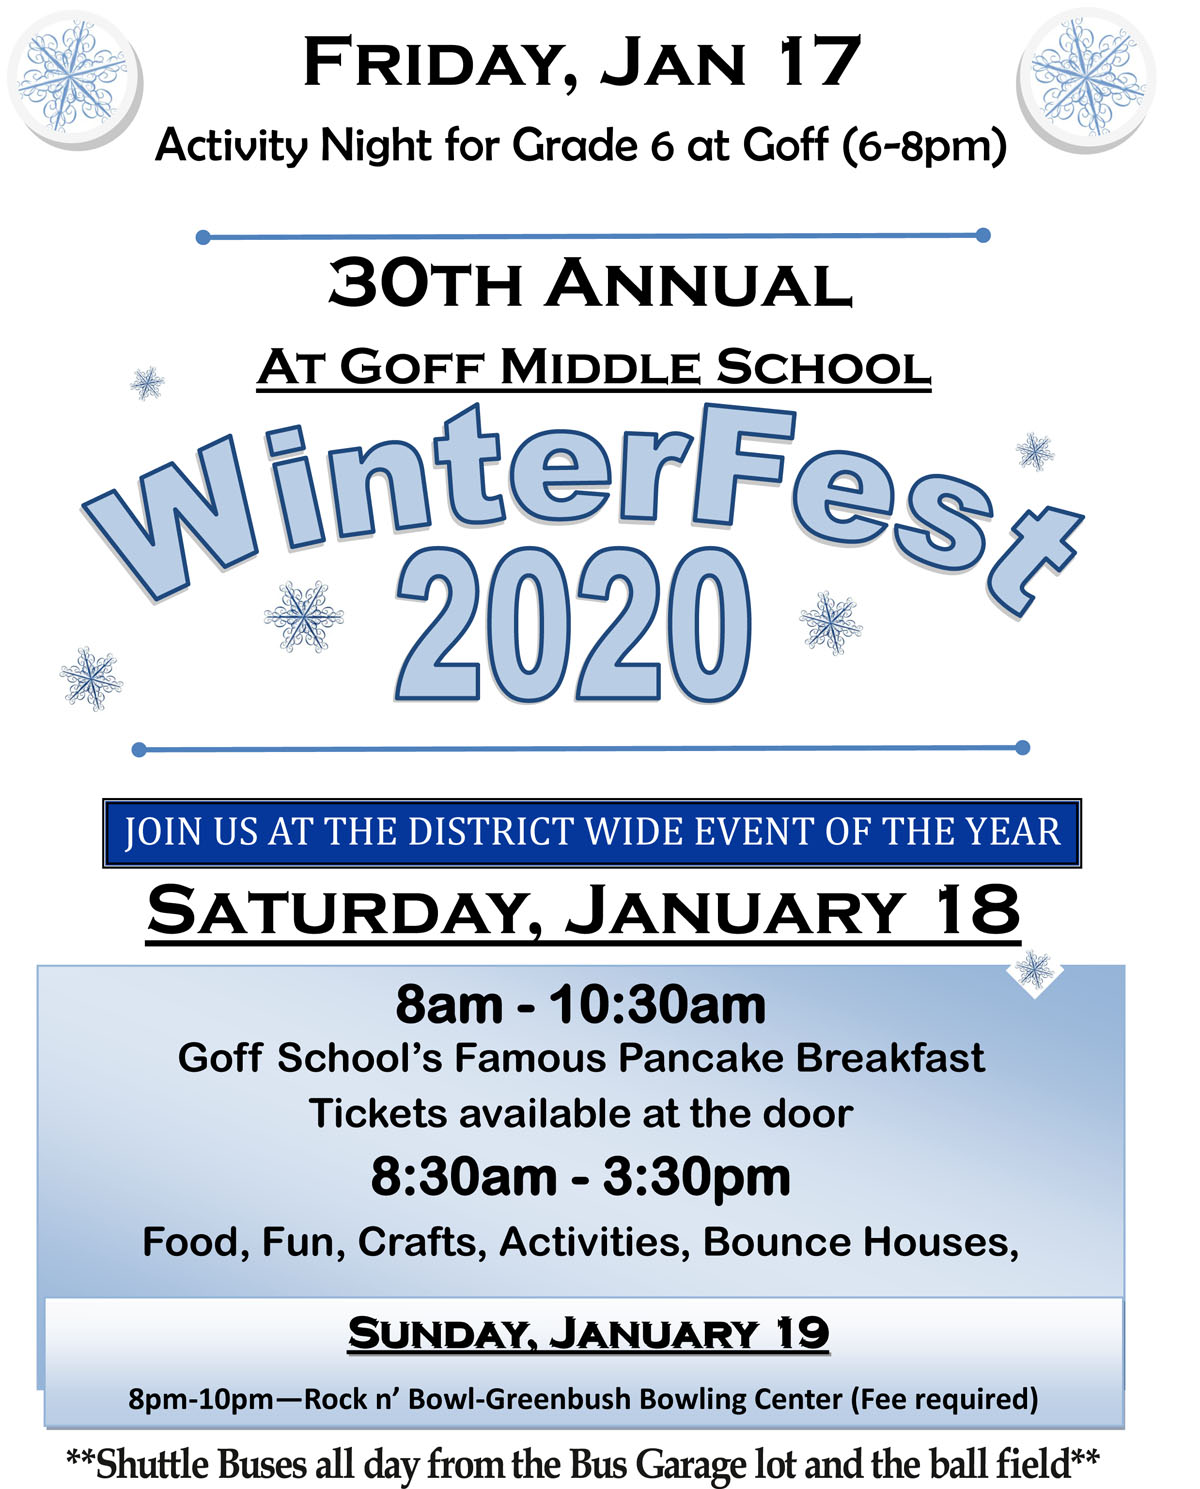 WinterFest 2020 Flyer